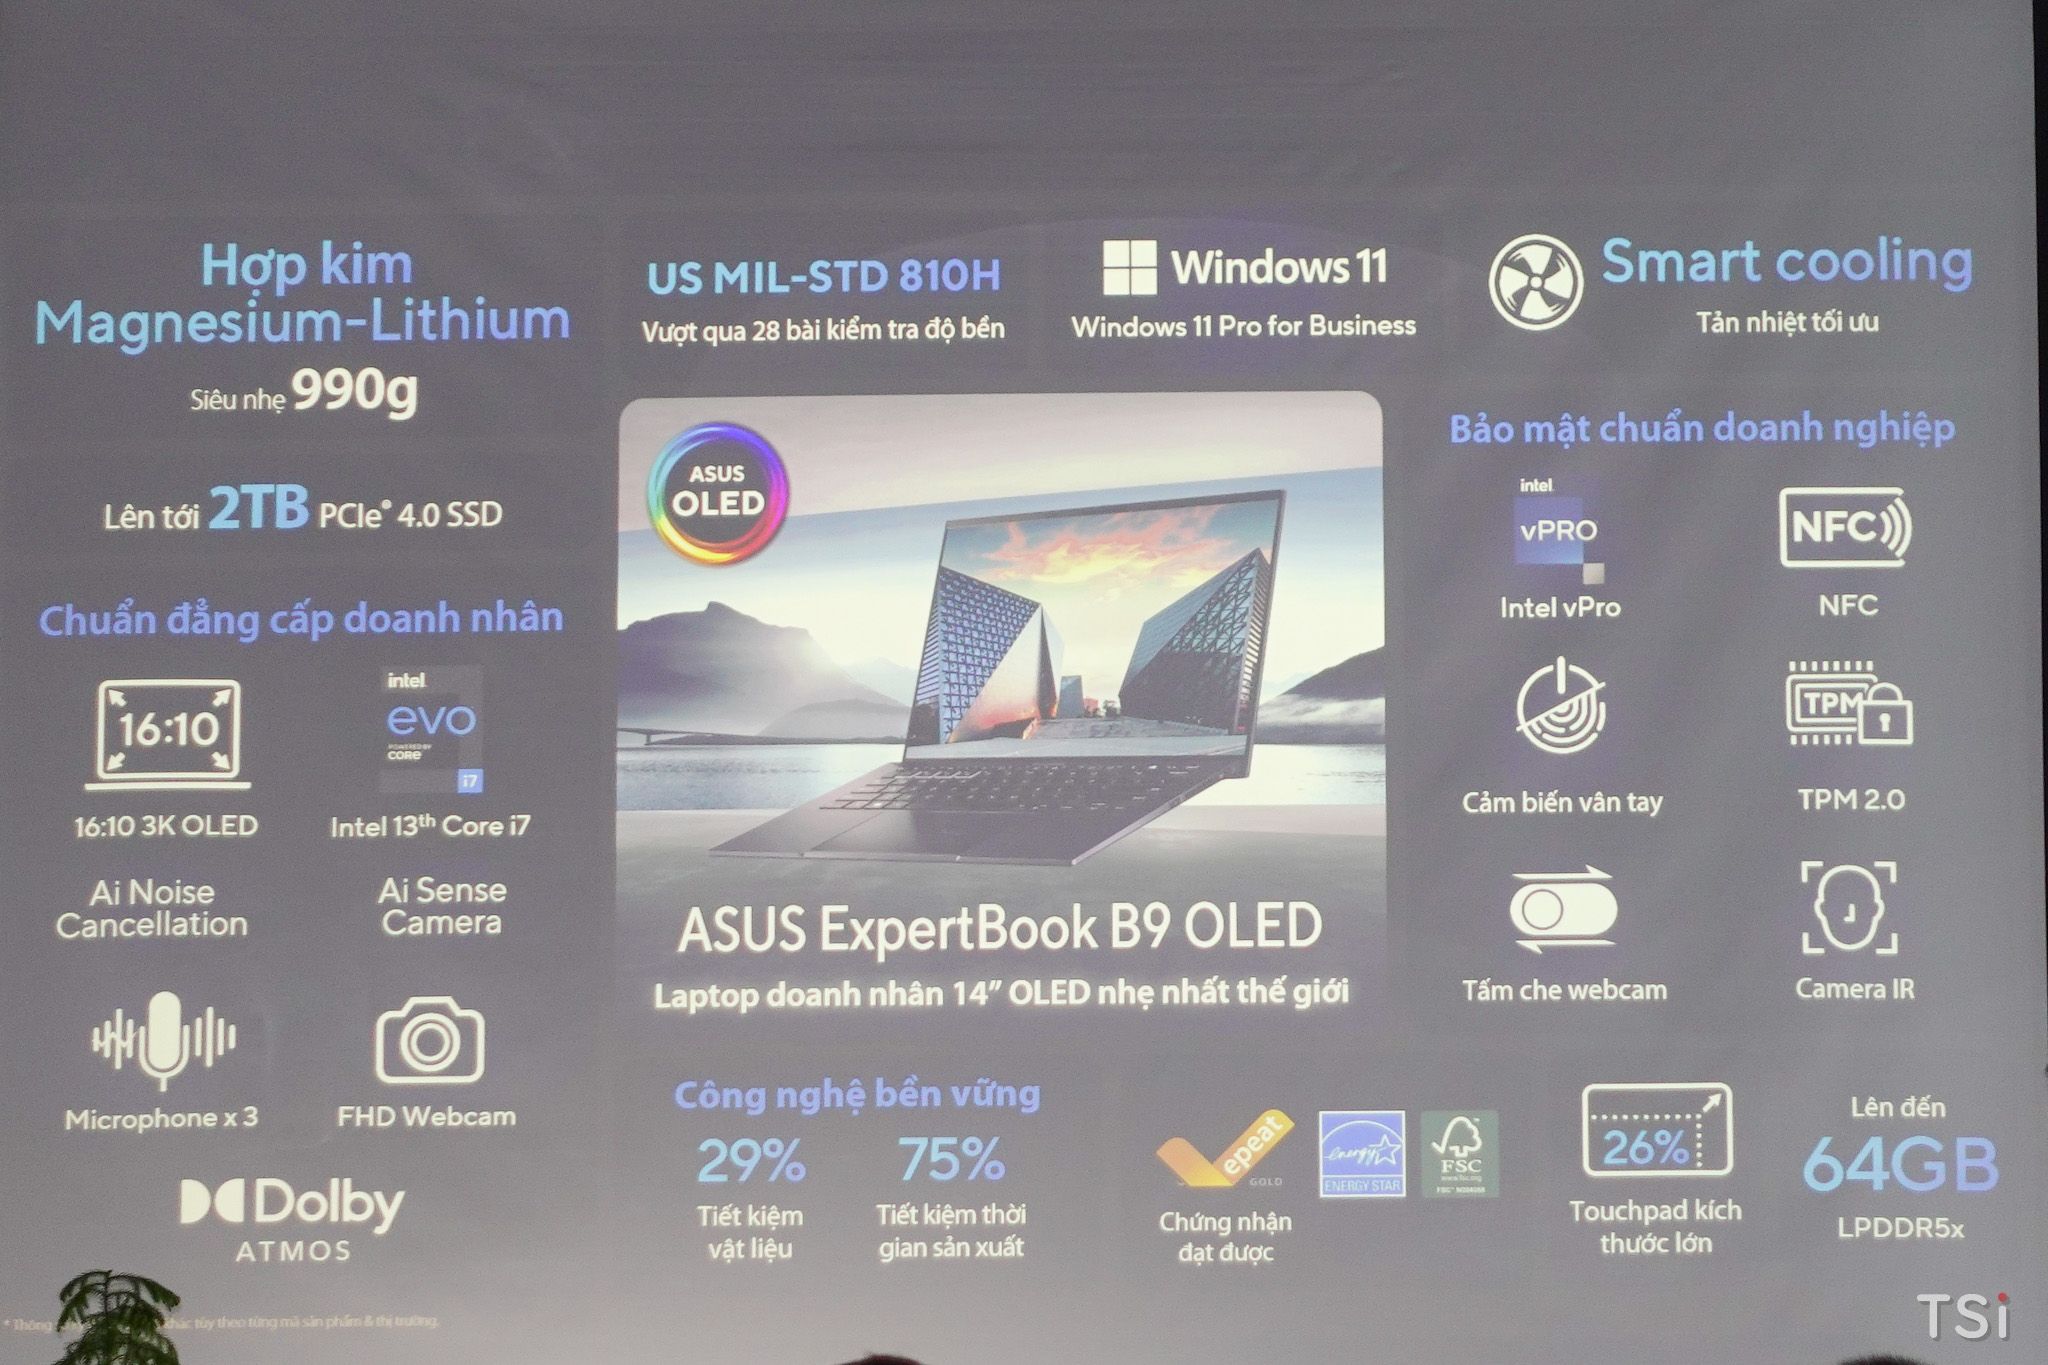 Laptop doanh nhân ASUS ExpertBook B9 OLED lên kệ